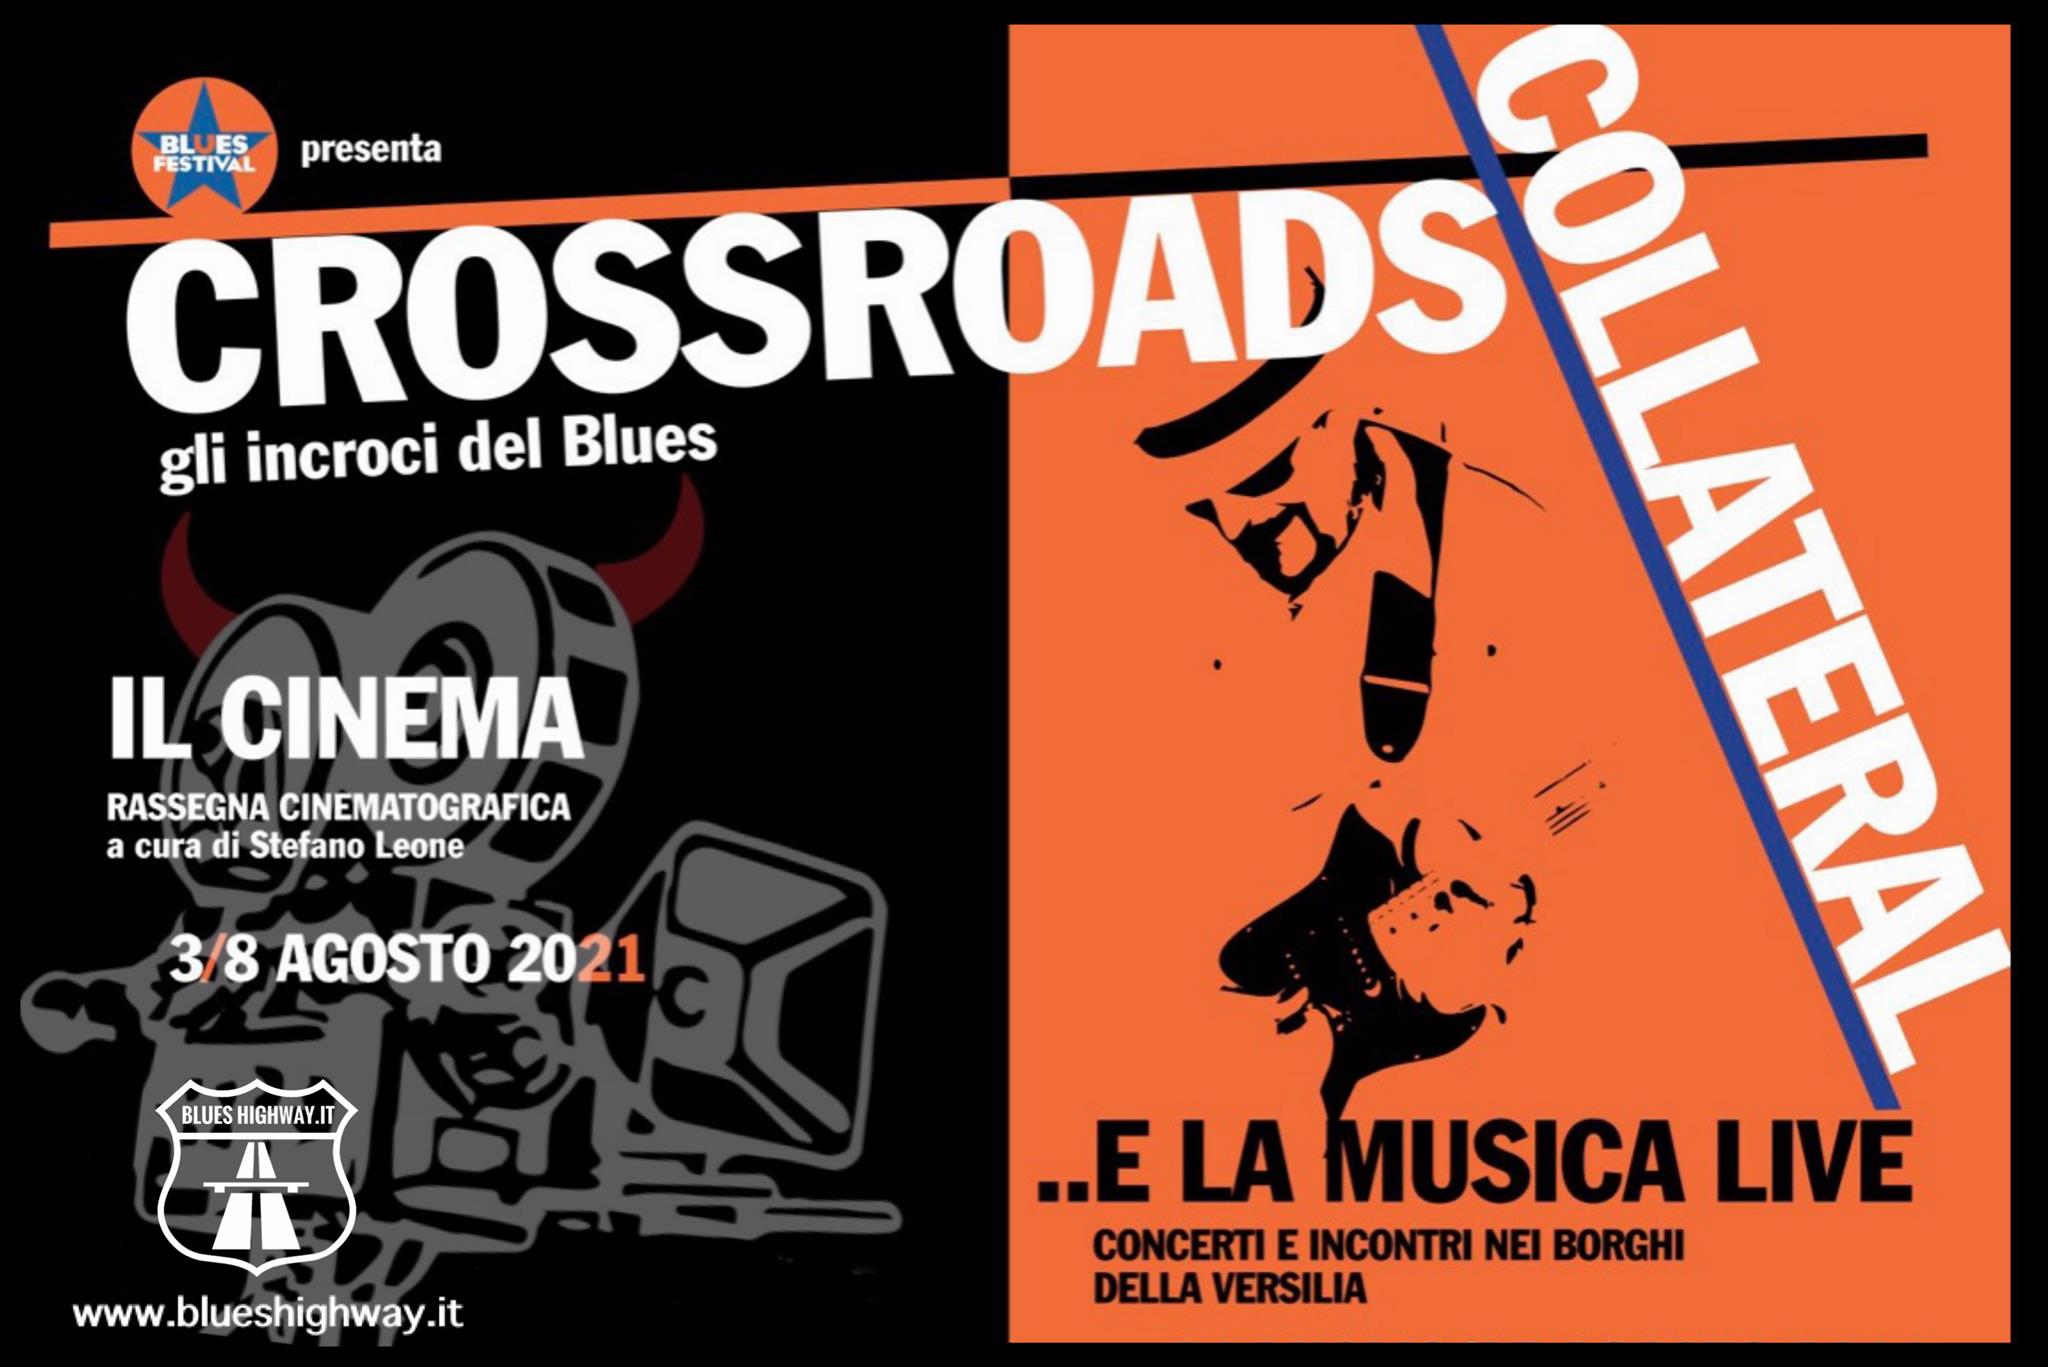 CROSSROADS - GLI INCROCI DEL BLUES - IL CINEMA & LA MUSICA - PROGRAMMA